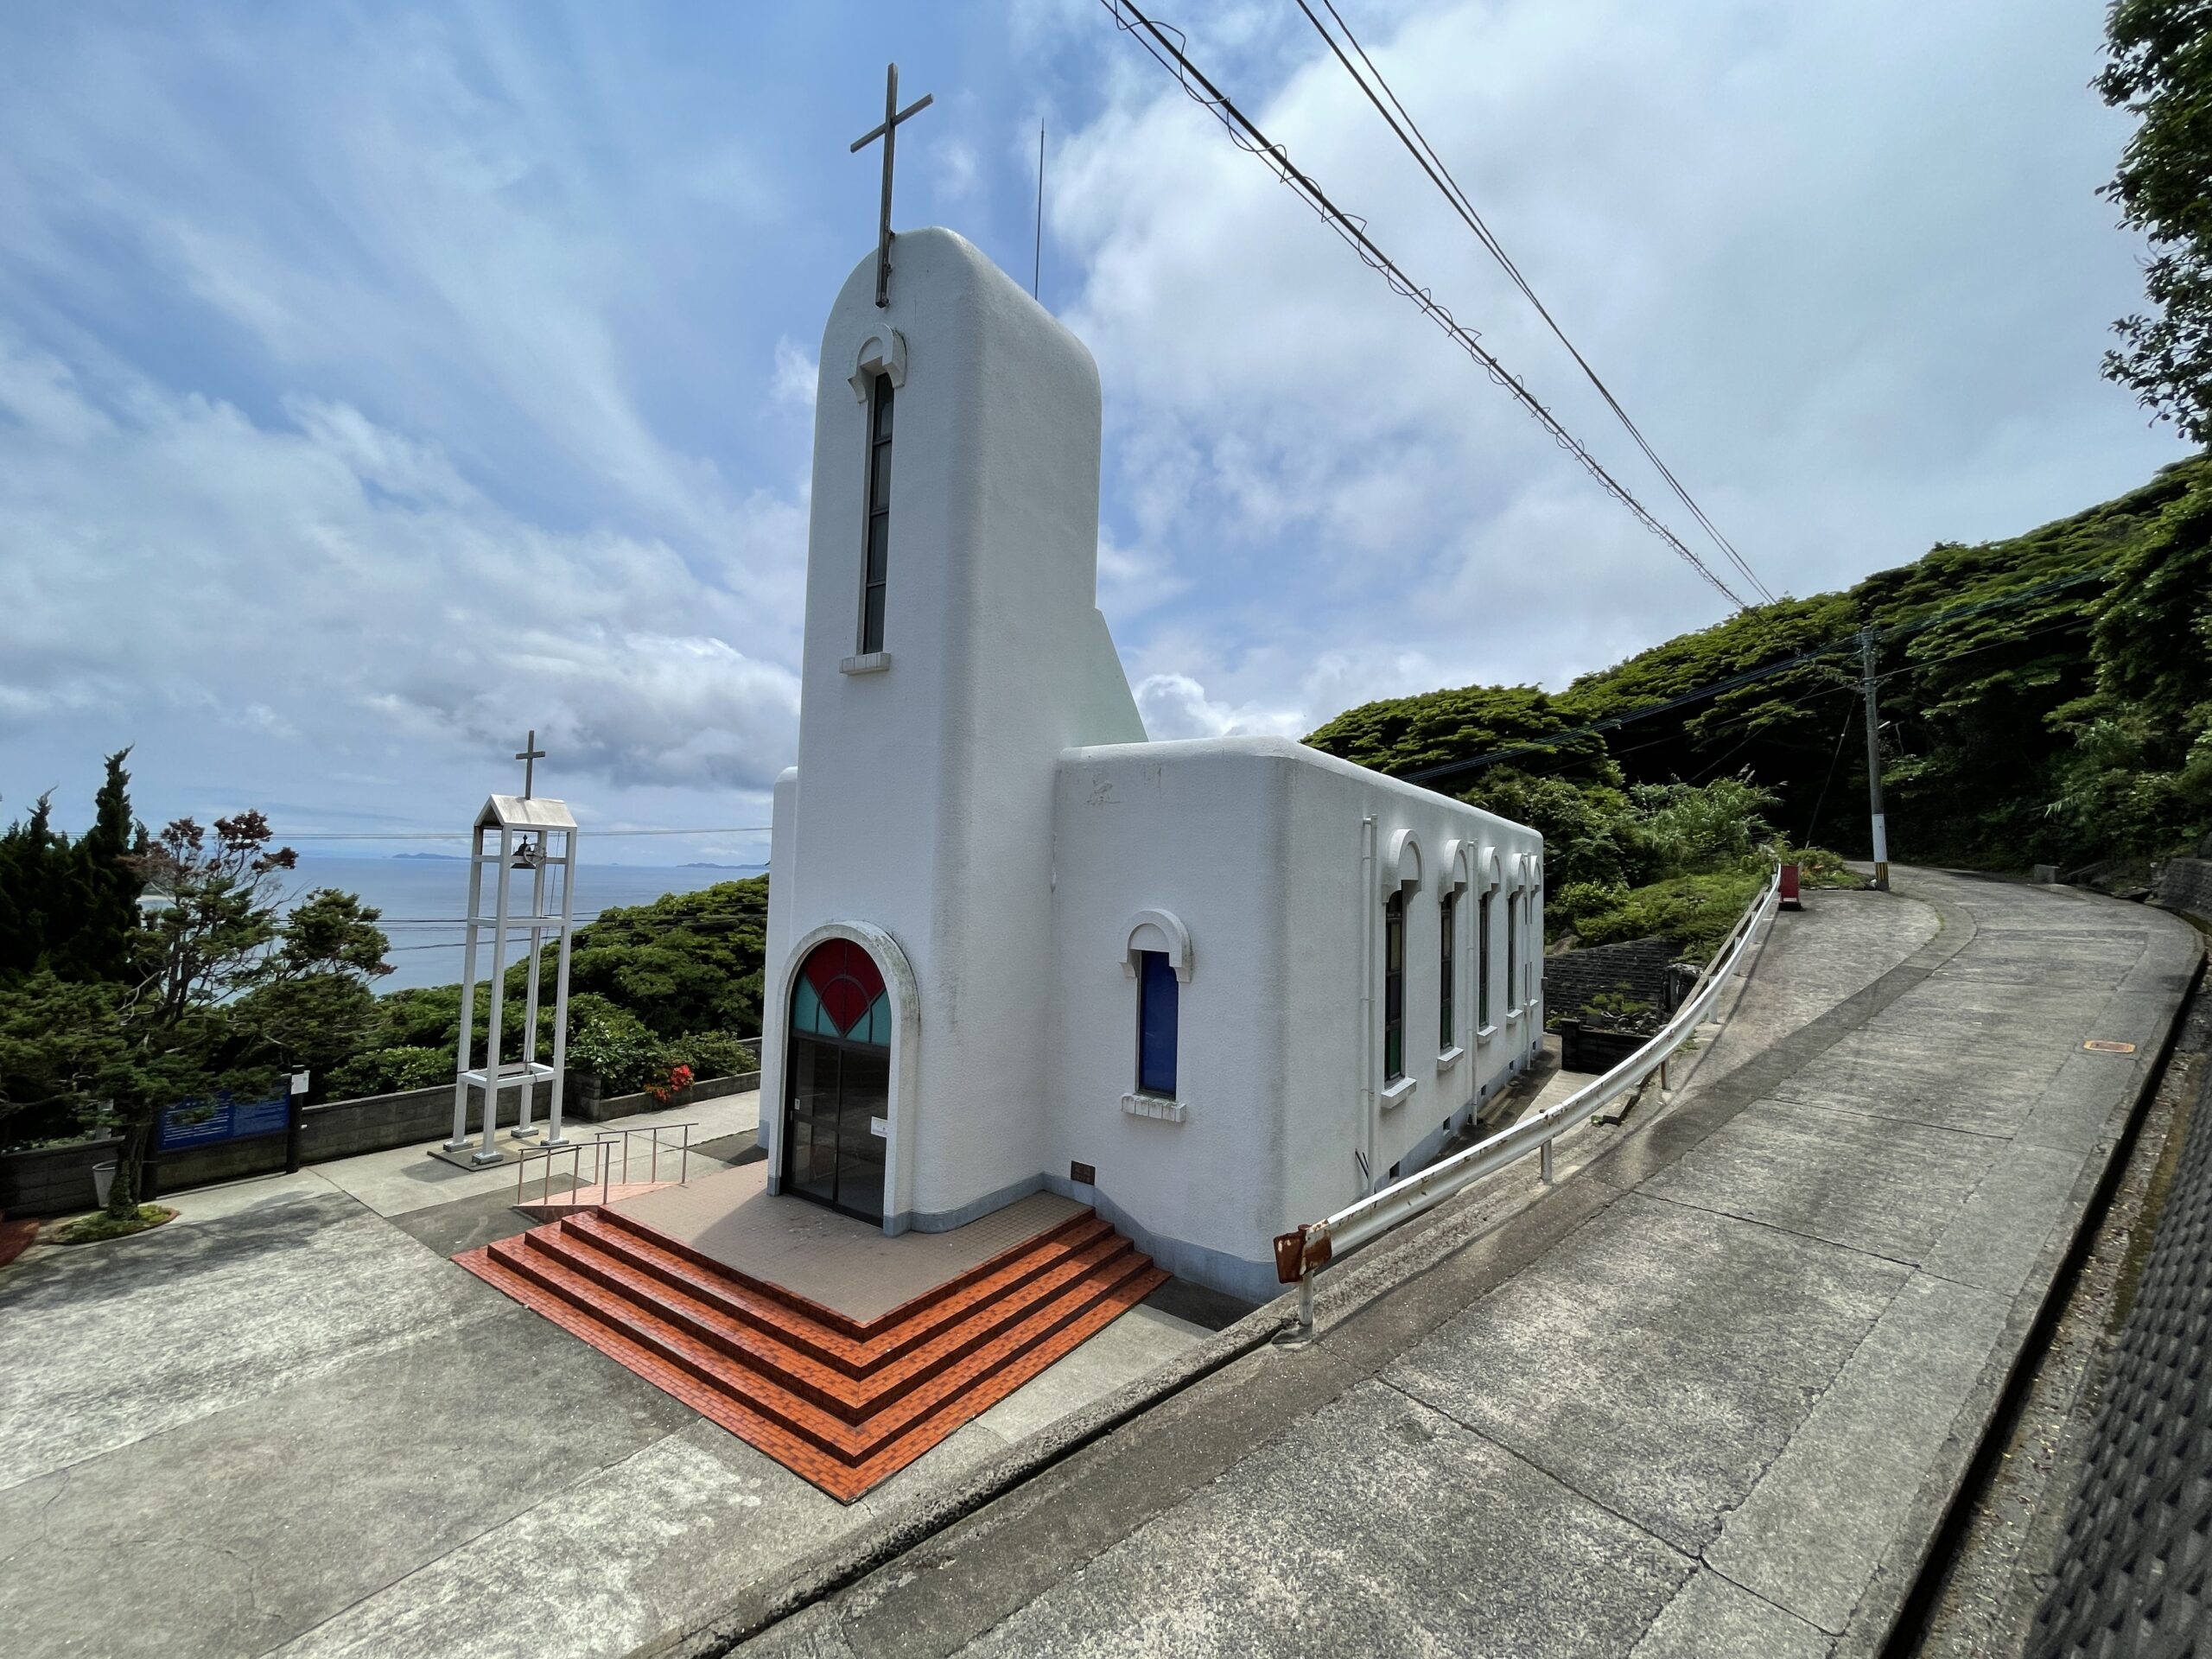 Die Komeyama-Kirche wurde 1977 gebaut und liegt im äußersten Norden der Nakadōri-Insel